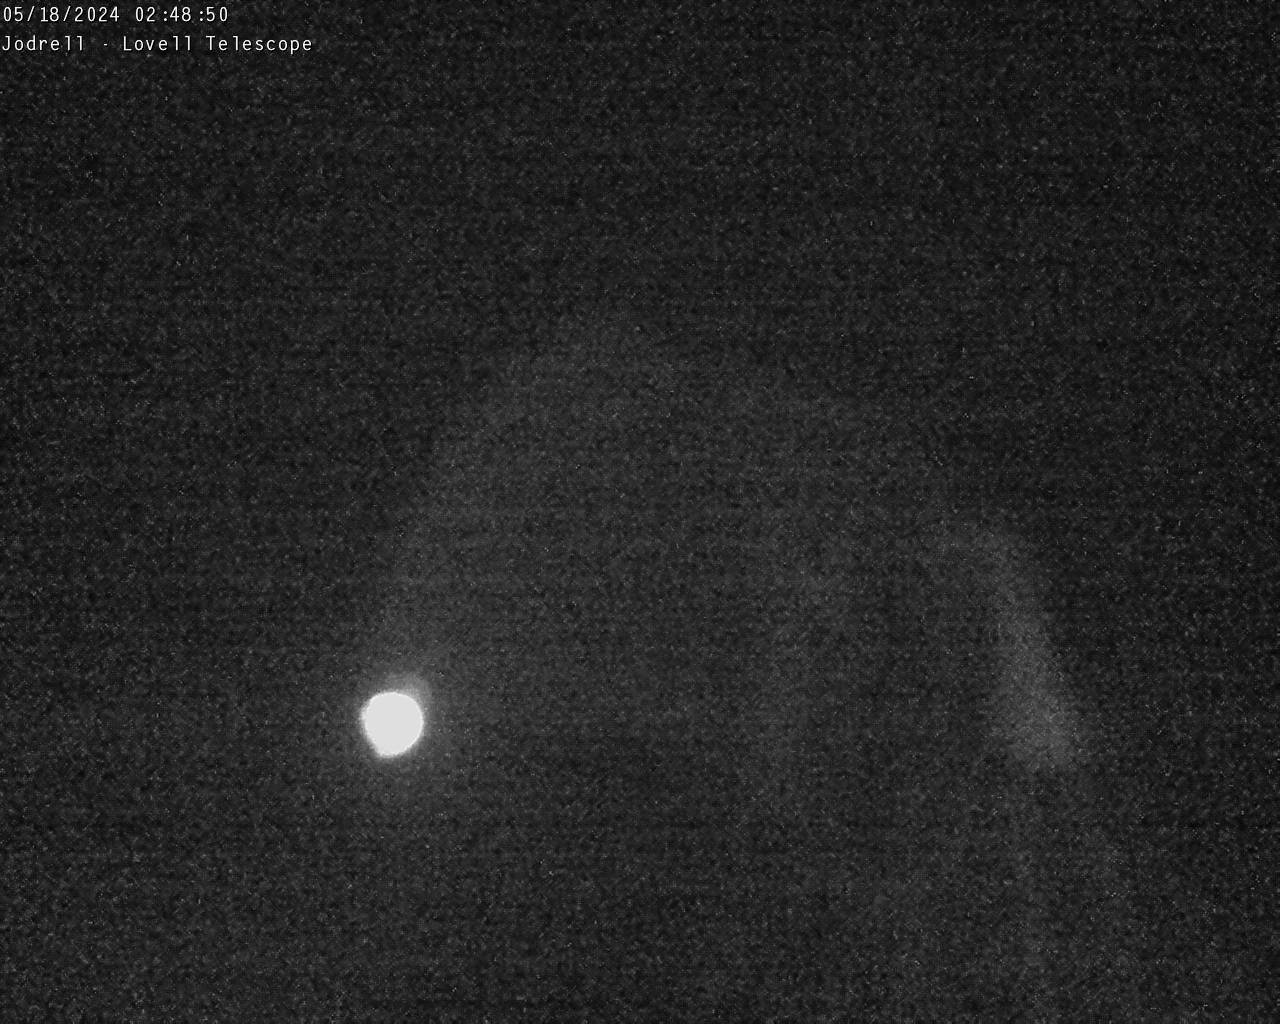 Observatoire de Jodrell Bank Sa. 02:49